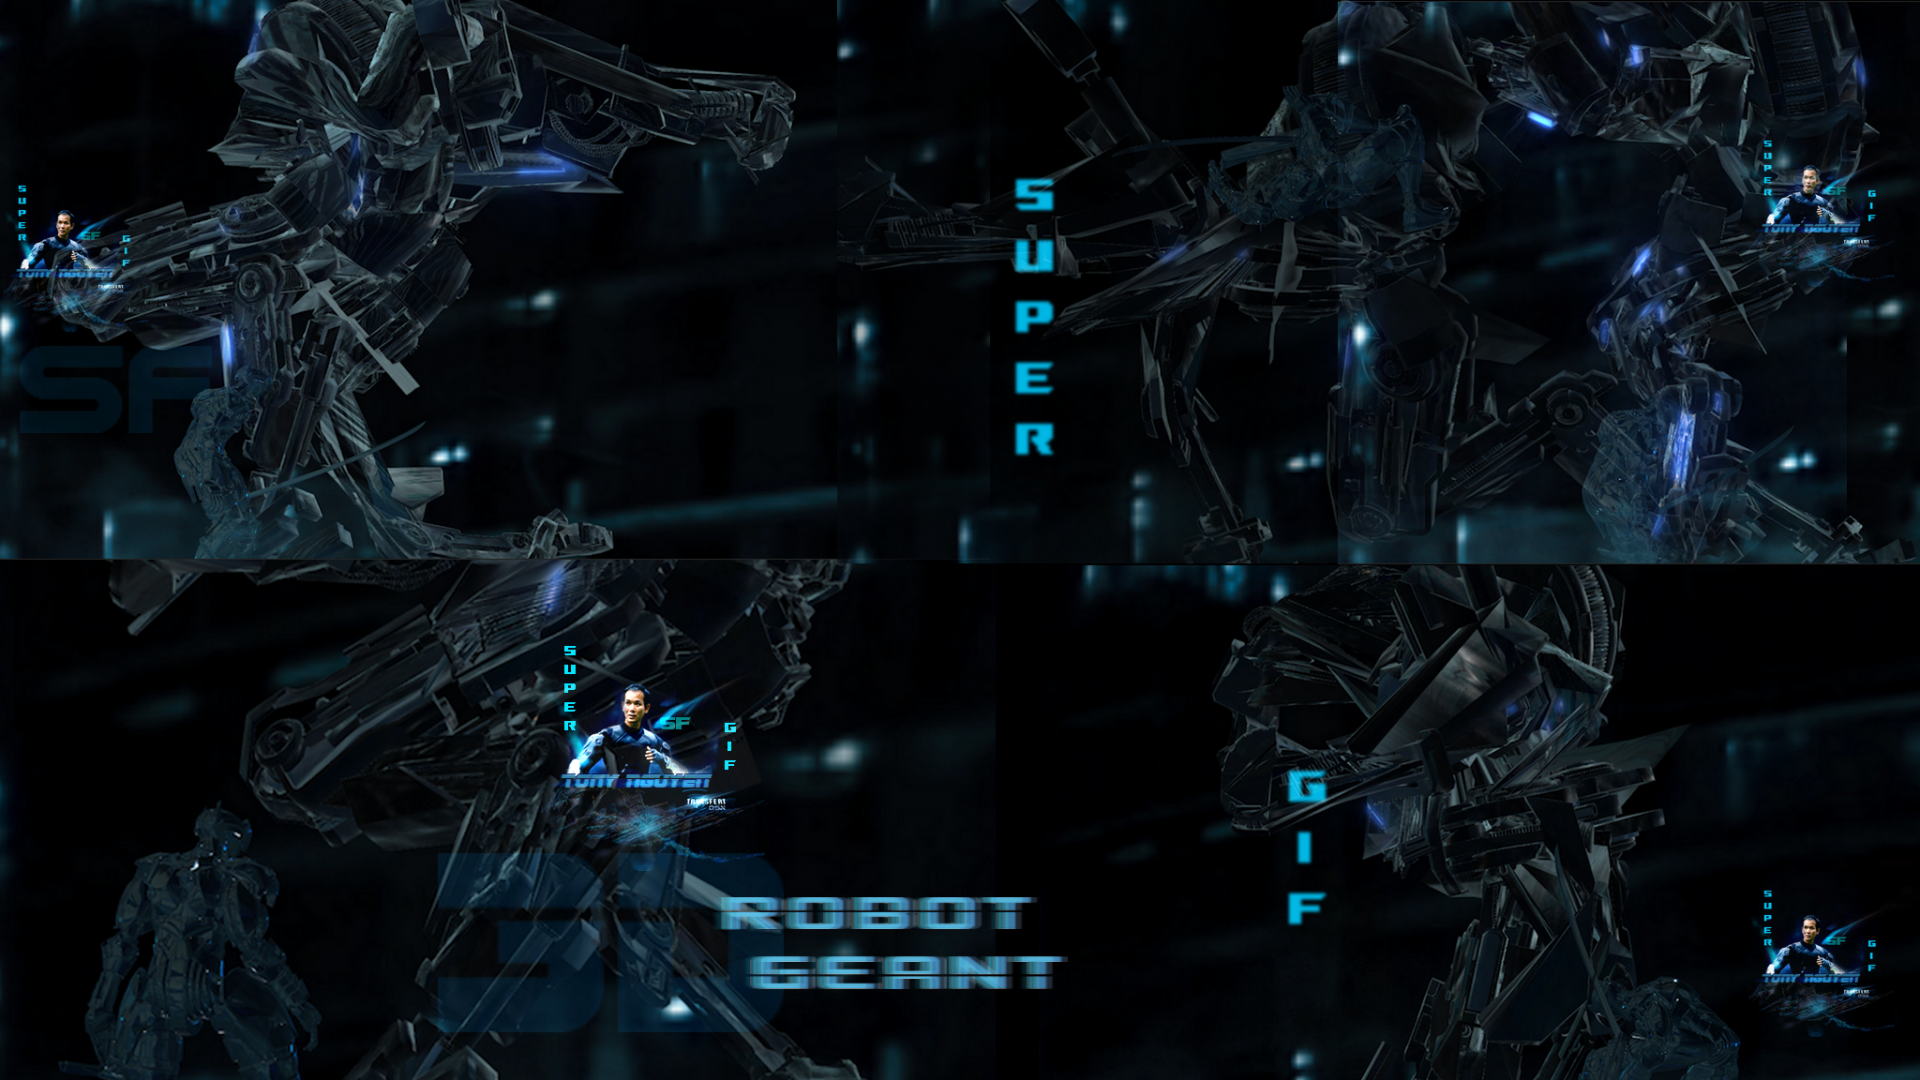 Robotninjacrystalvsgeantrobot3d supergif bytonynguyensf